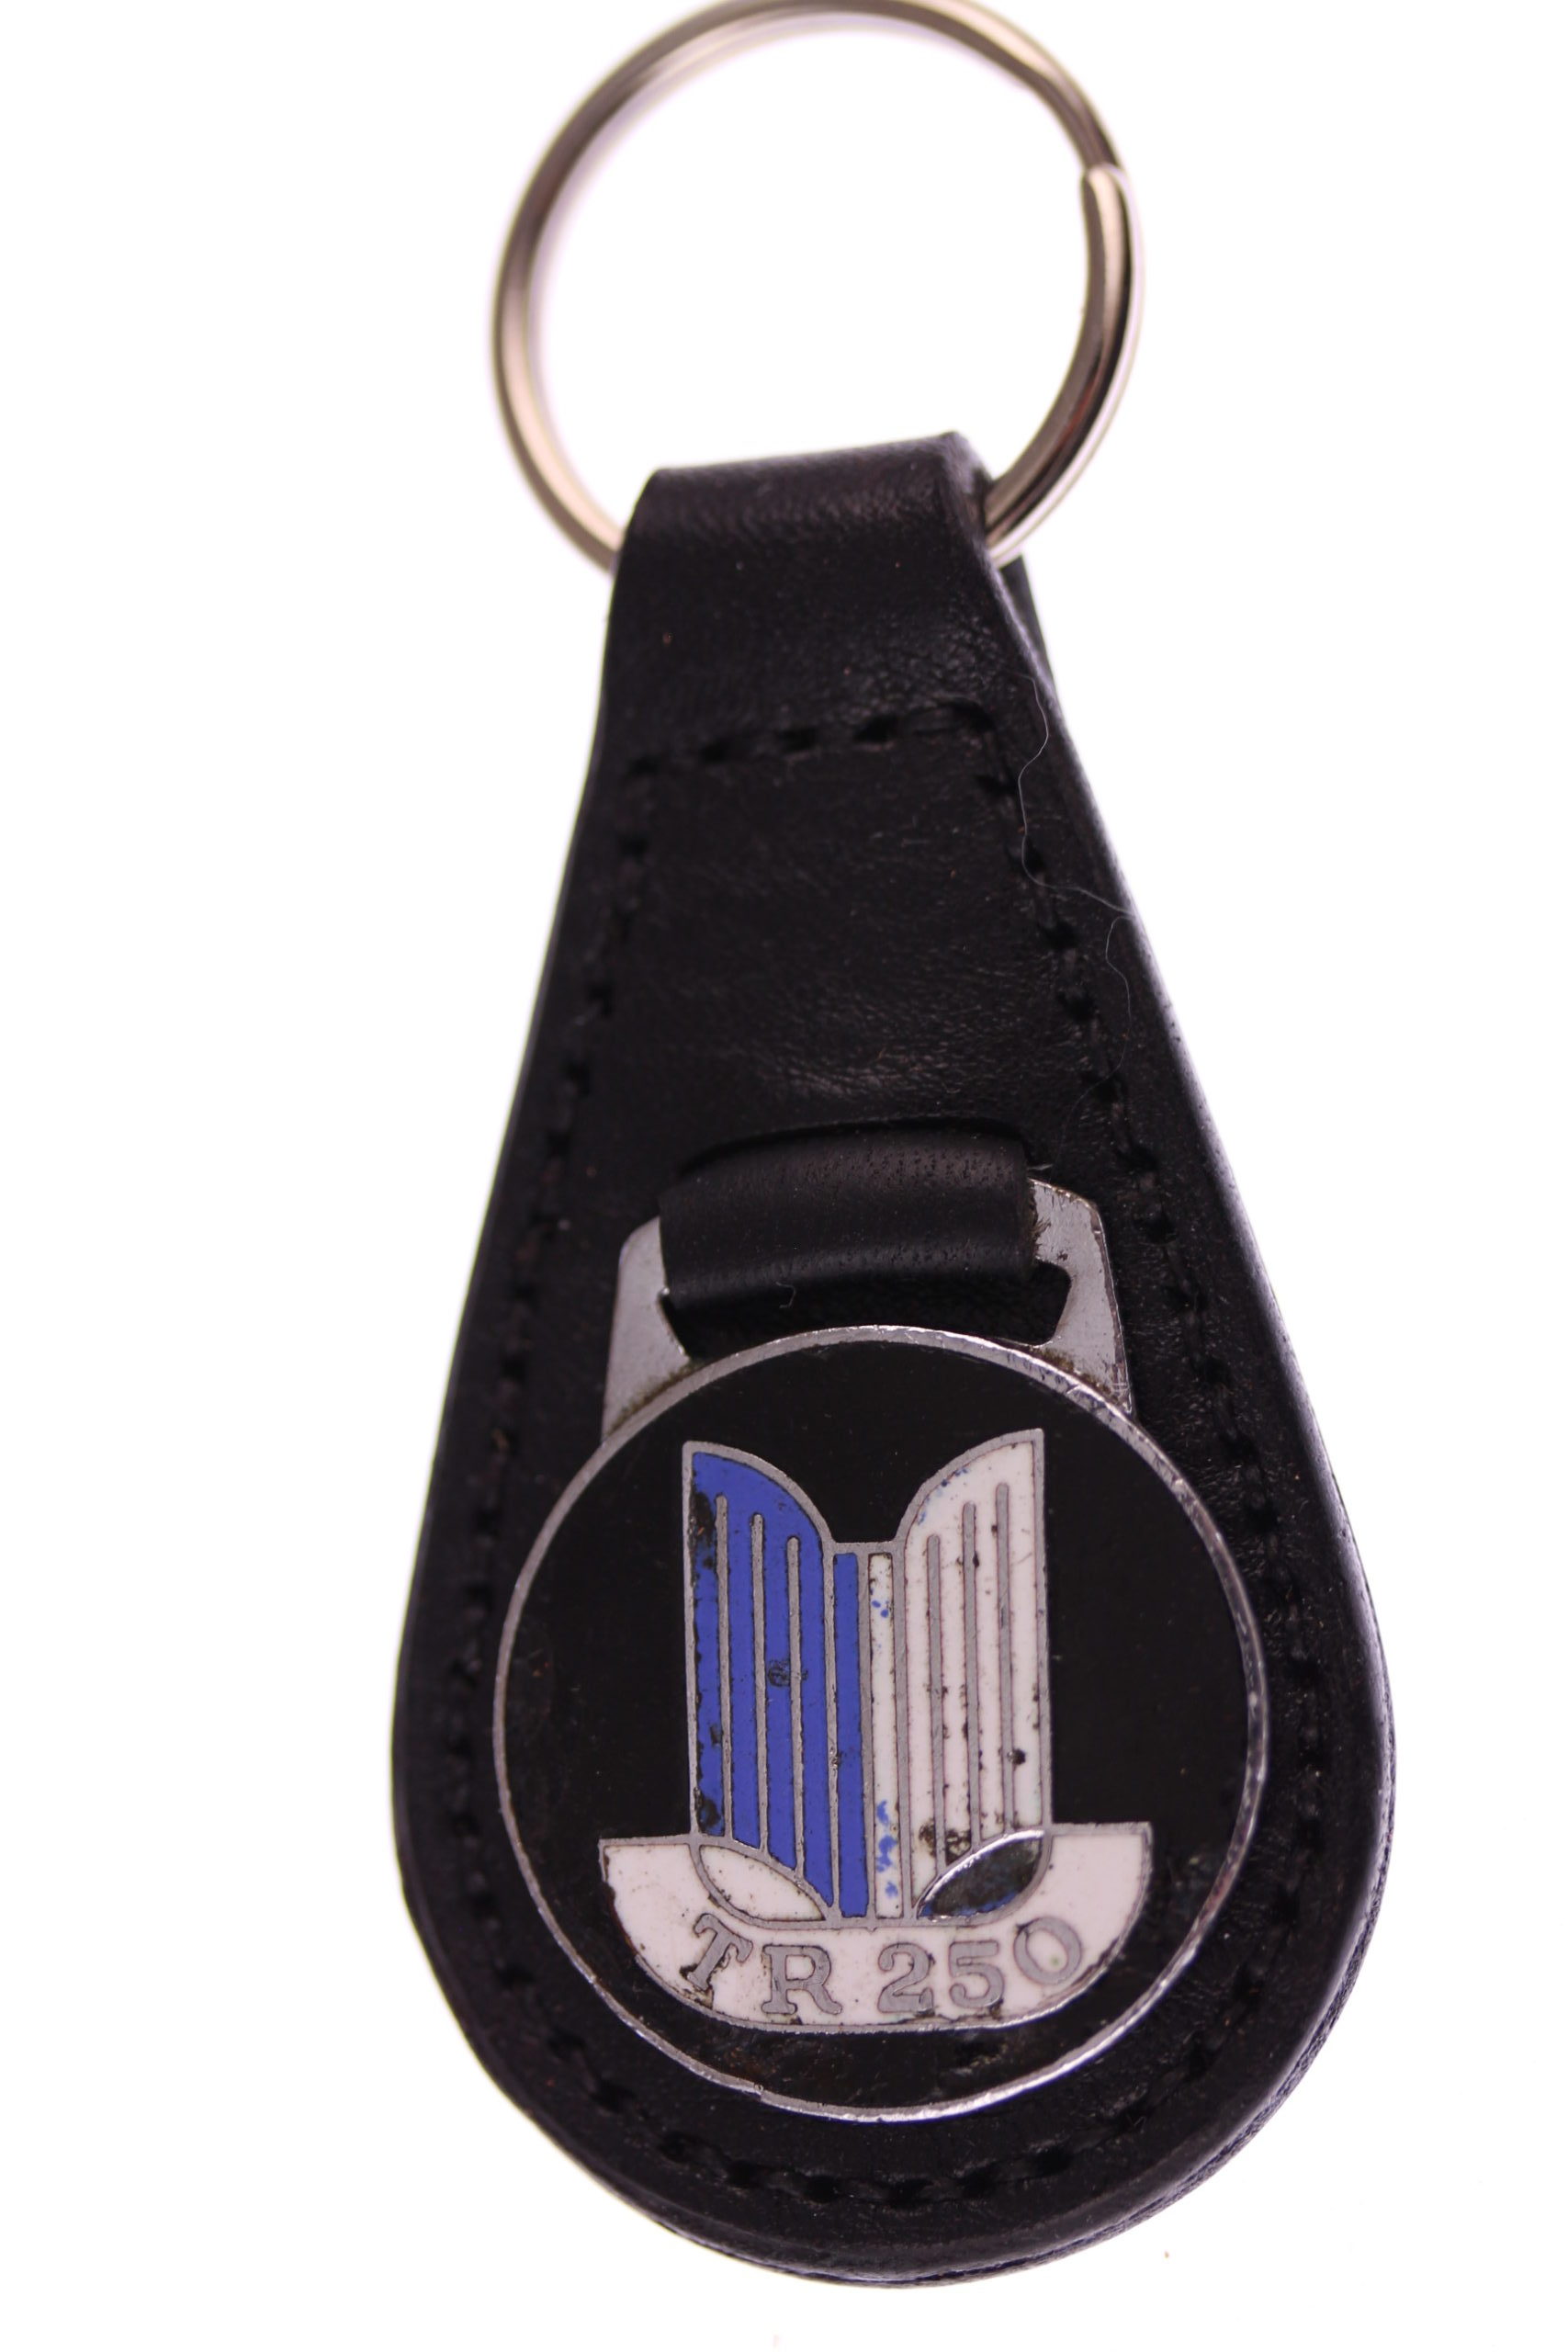 Genuine Leather Keyfob Key Ring With An Enamel Emblem Triumph World Chrome Globe 